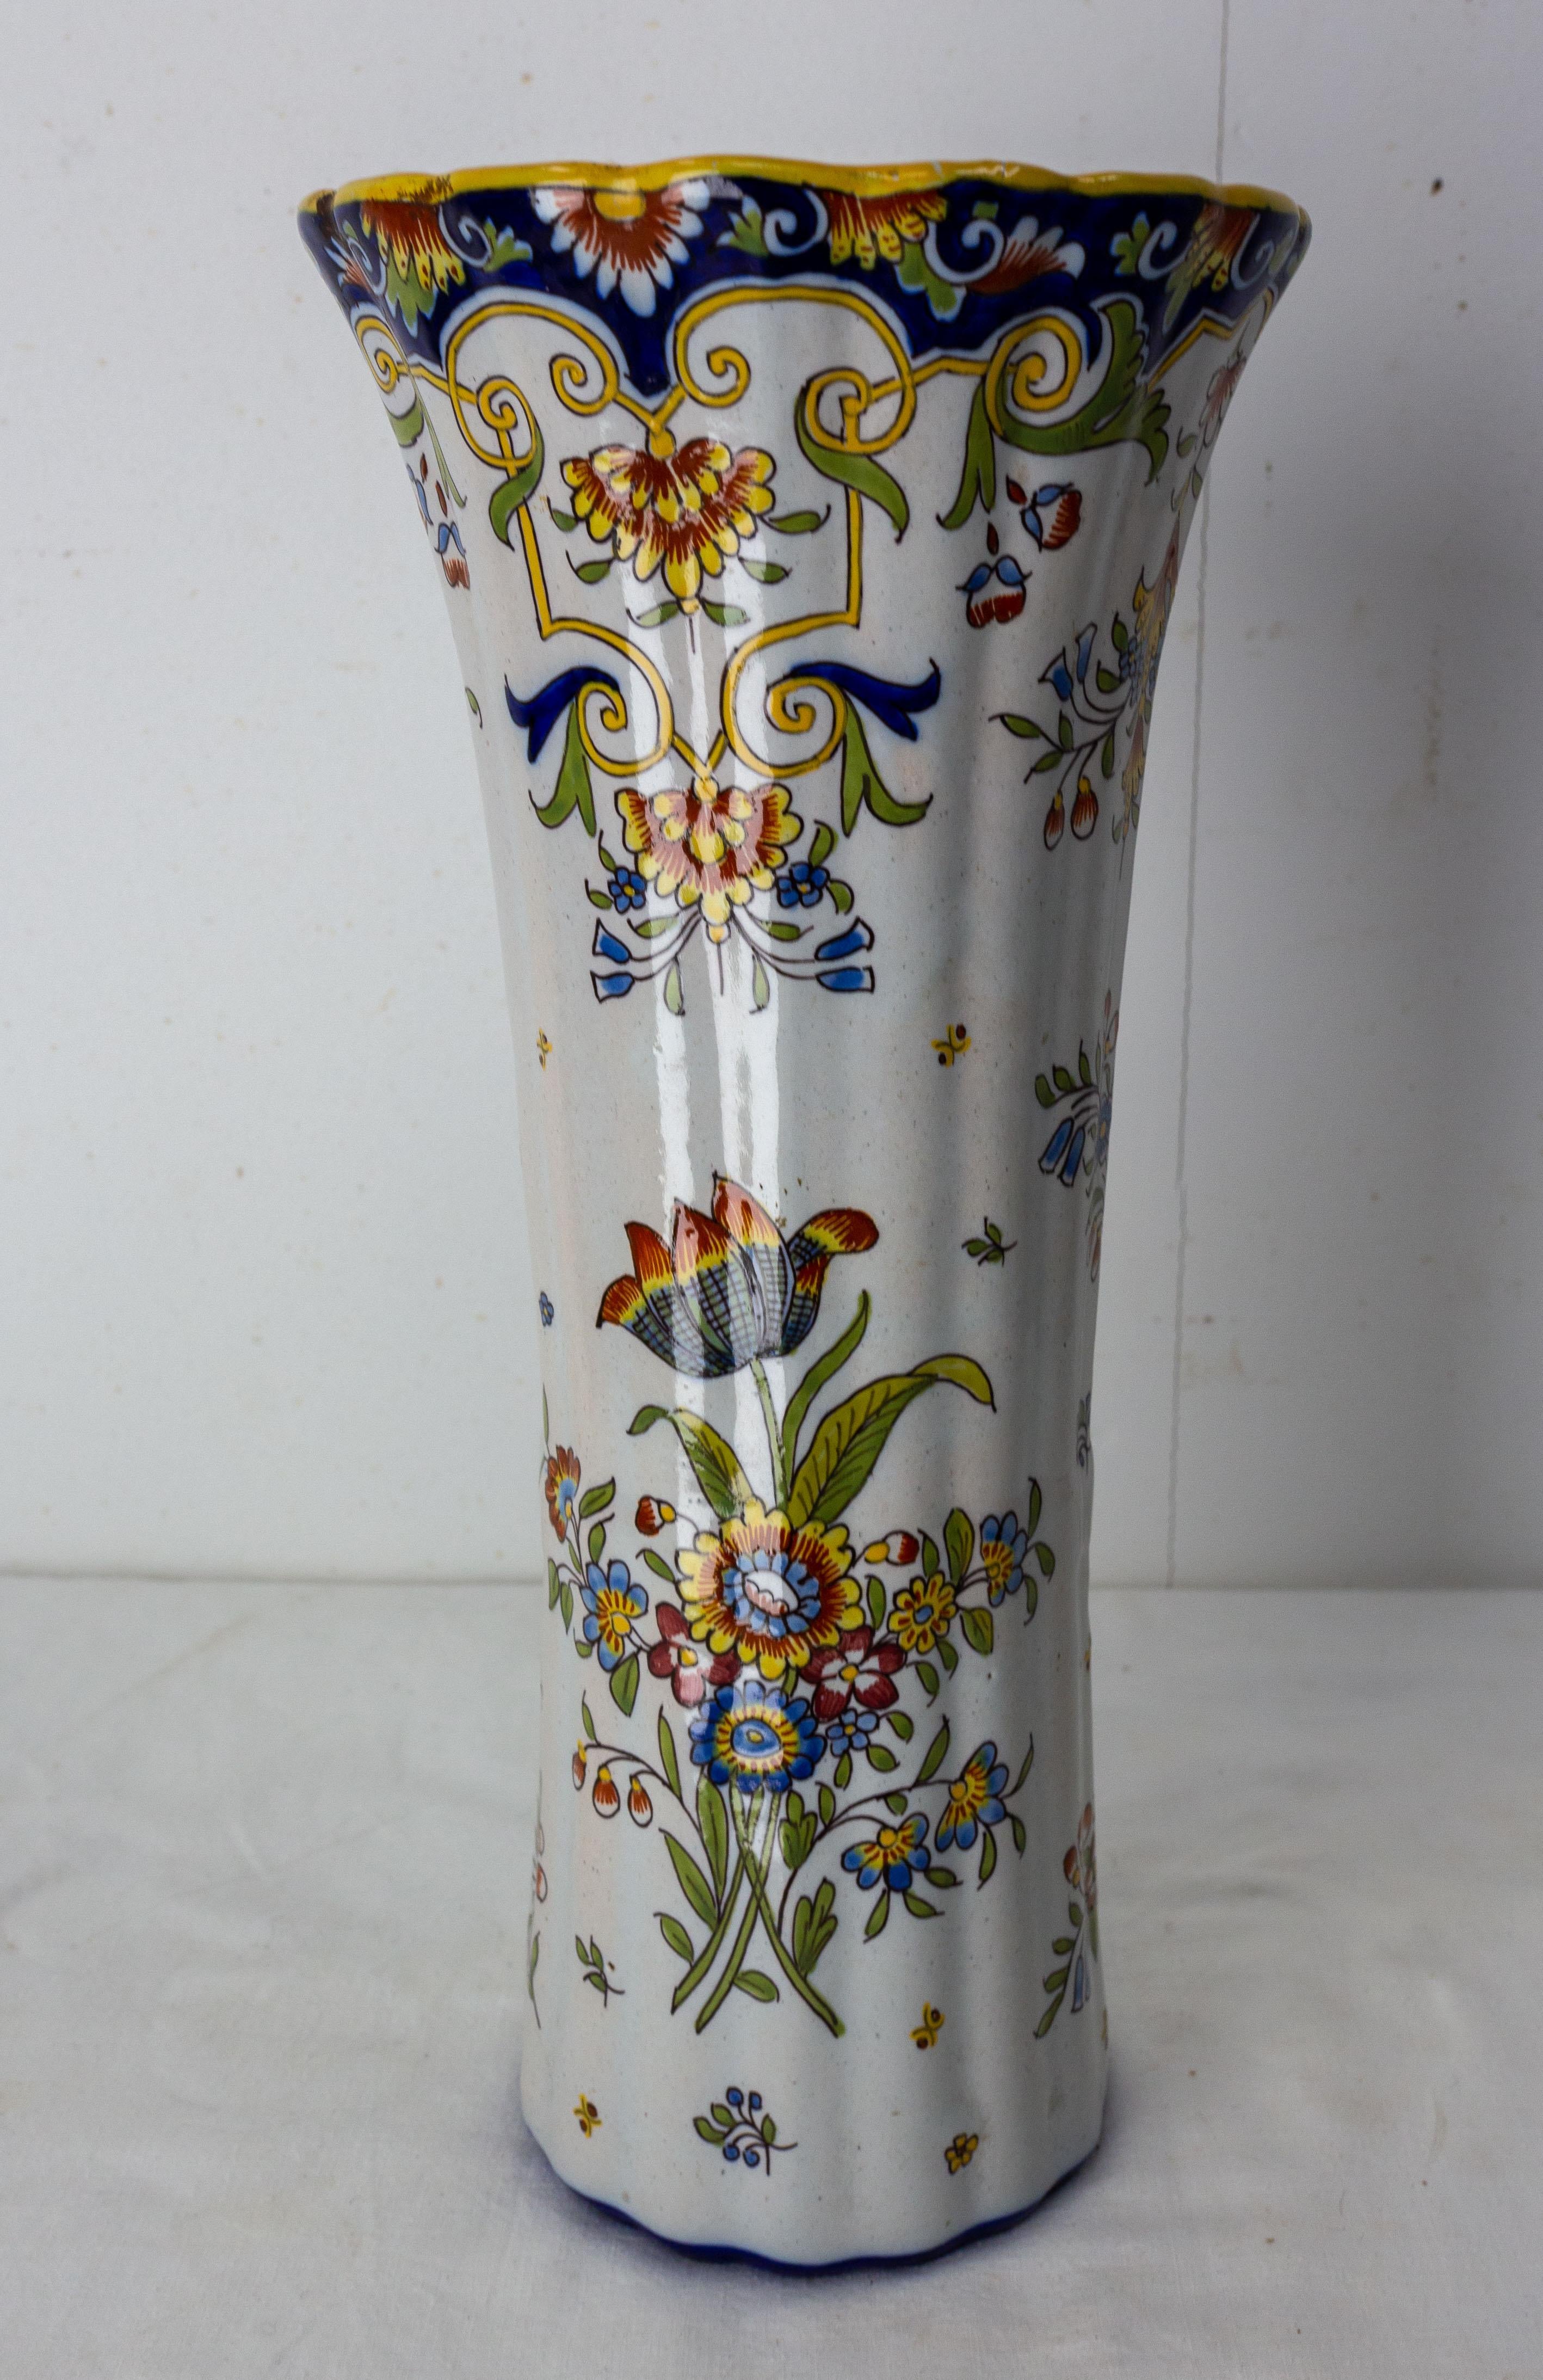 Vase en faïence français des manufactures de Rouen.
Décor floral peint à la main dans une palette de bleu, orange, blanc, jaune et vert
Bon état ancien, fissures apparentes sur le glaçage qui n'affectent pas la qualité du vase.

Expédition :
D 15,5